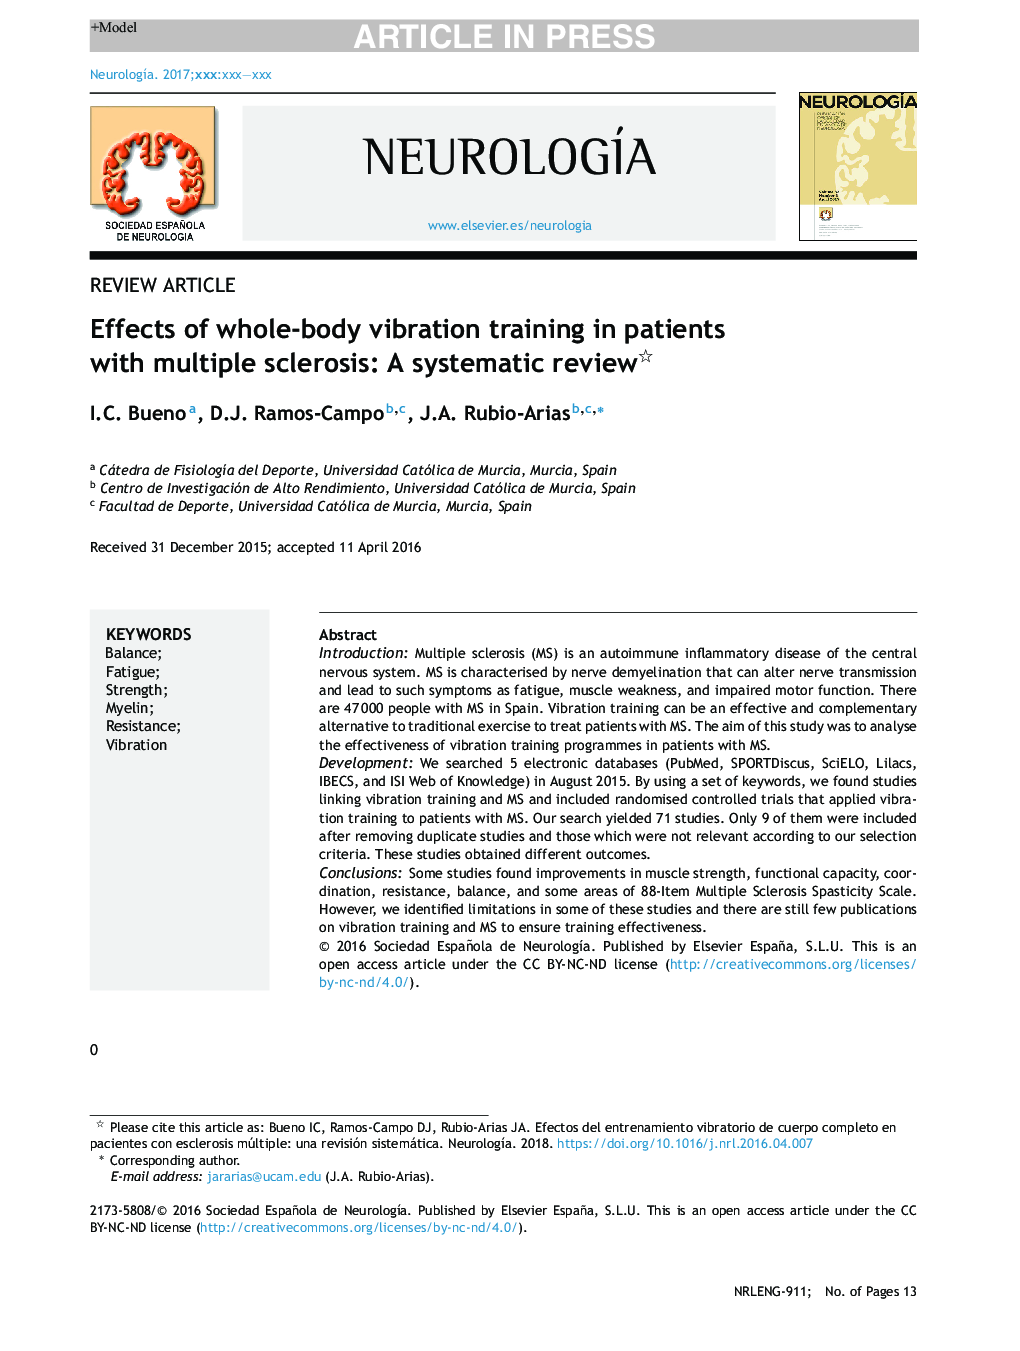 تأثیر آموزش ارتعاش کامل در بیماران مبتلا به مولتیپل اسکلروزیس: بررسی سیستماتیک